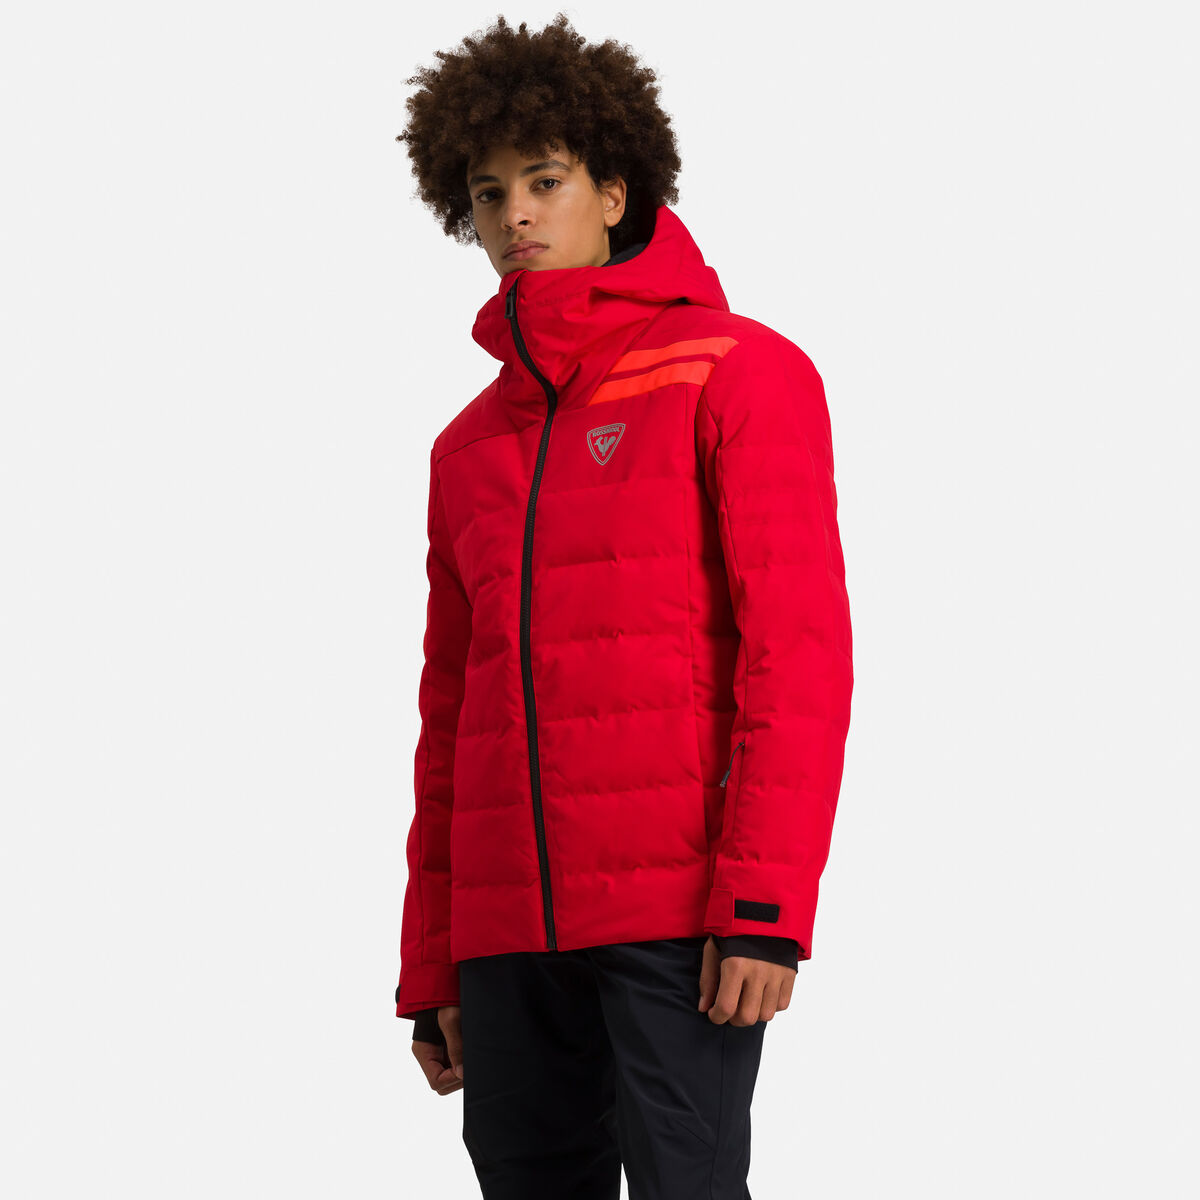 Rossignol Ski Jacket Rouge Crimson - Veste ski homme noir 2019 Sports  Aventure